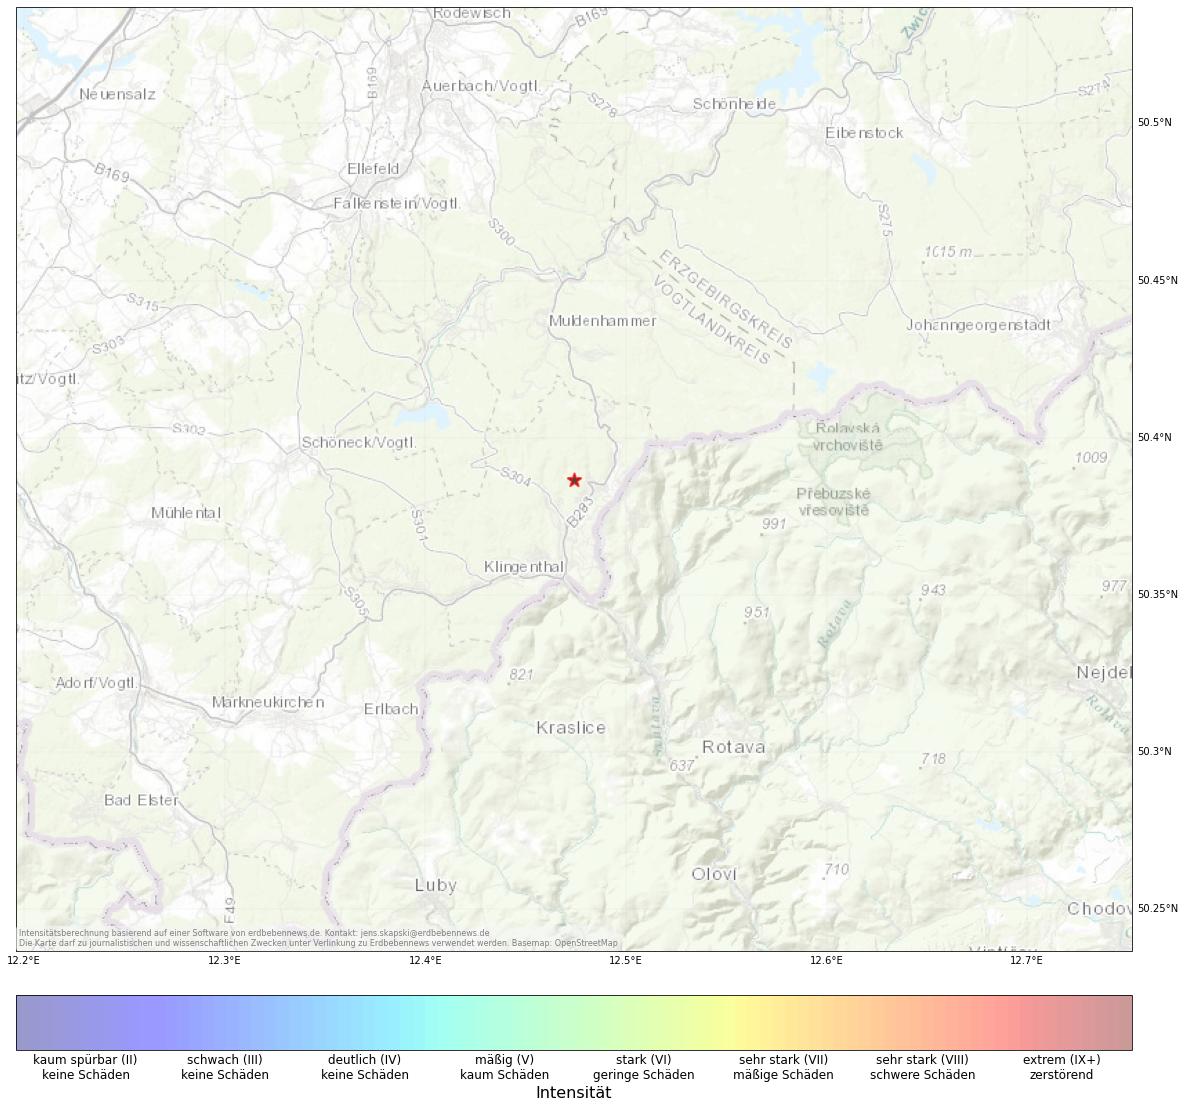 Berechnete Intensität (ShakeMap) des Erdbebens der Stärke 1.0 am 14. December, 09:11 in Deutschland